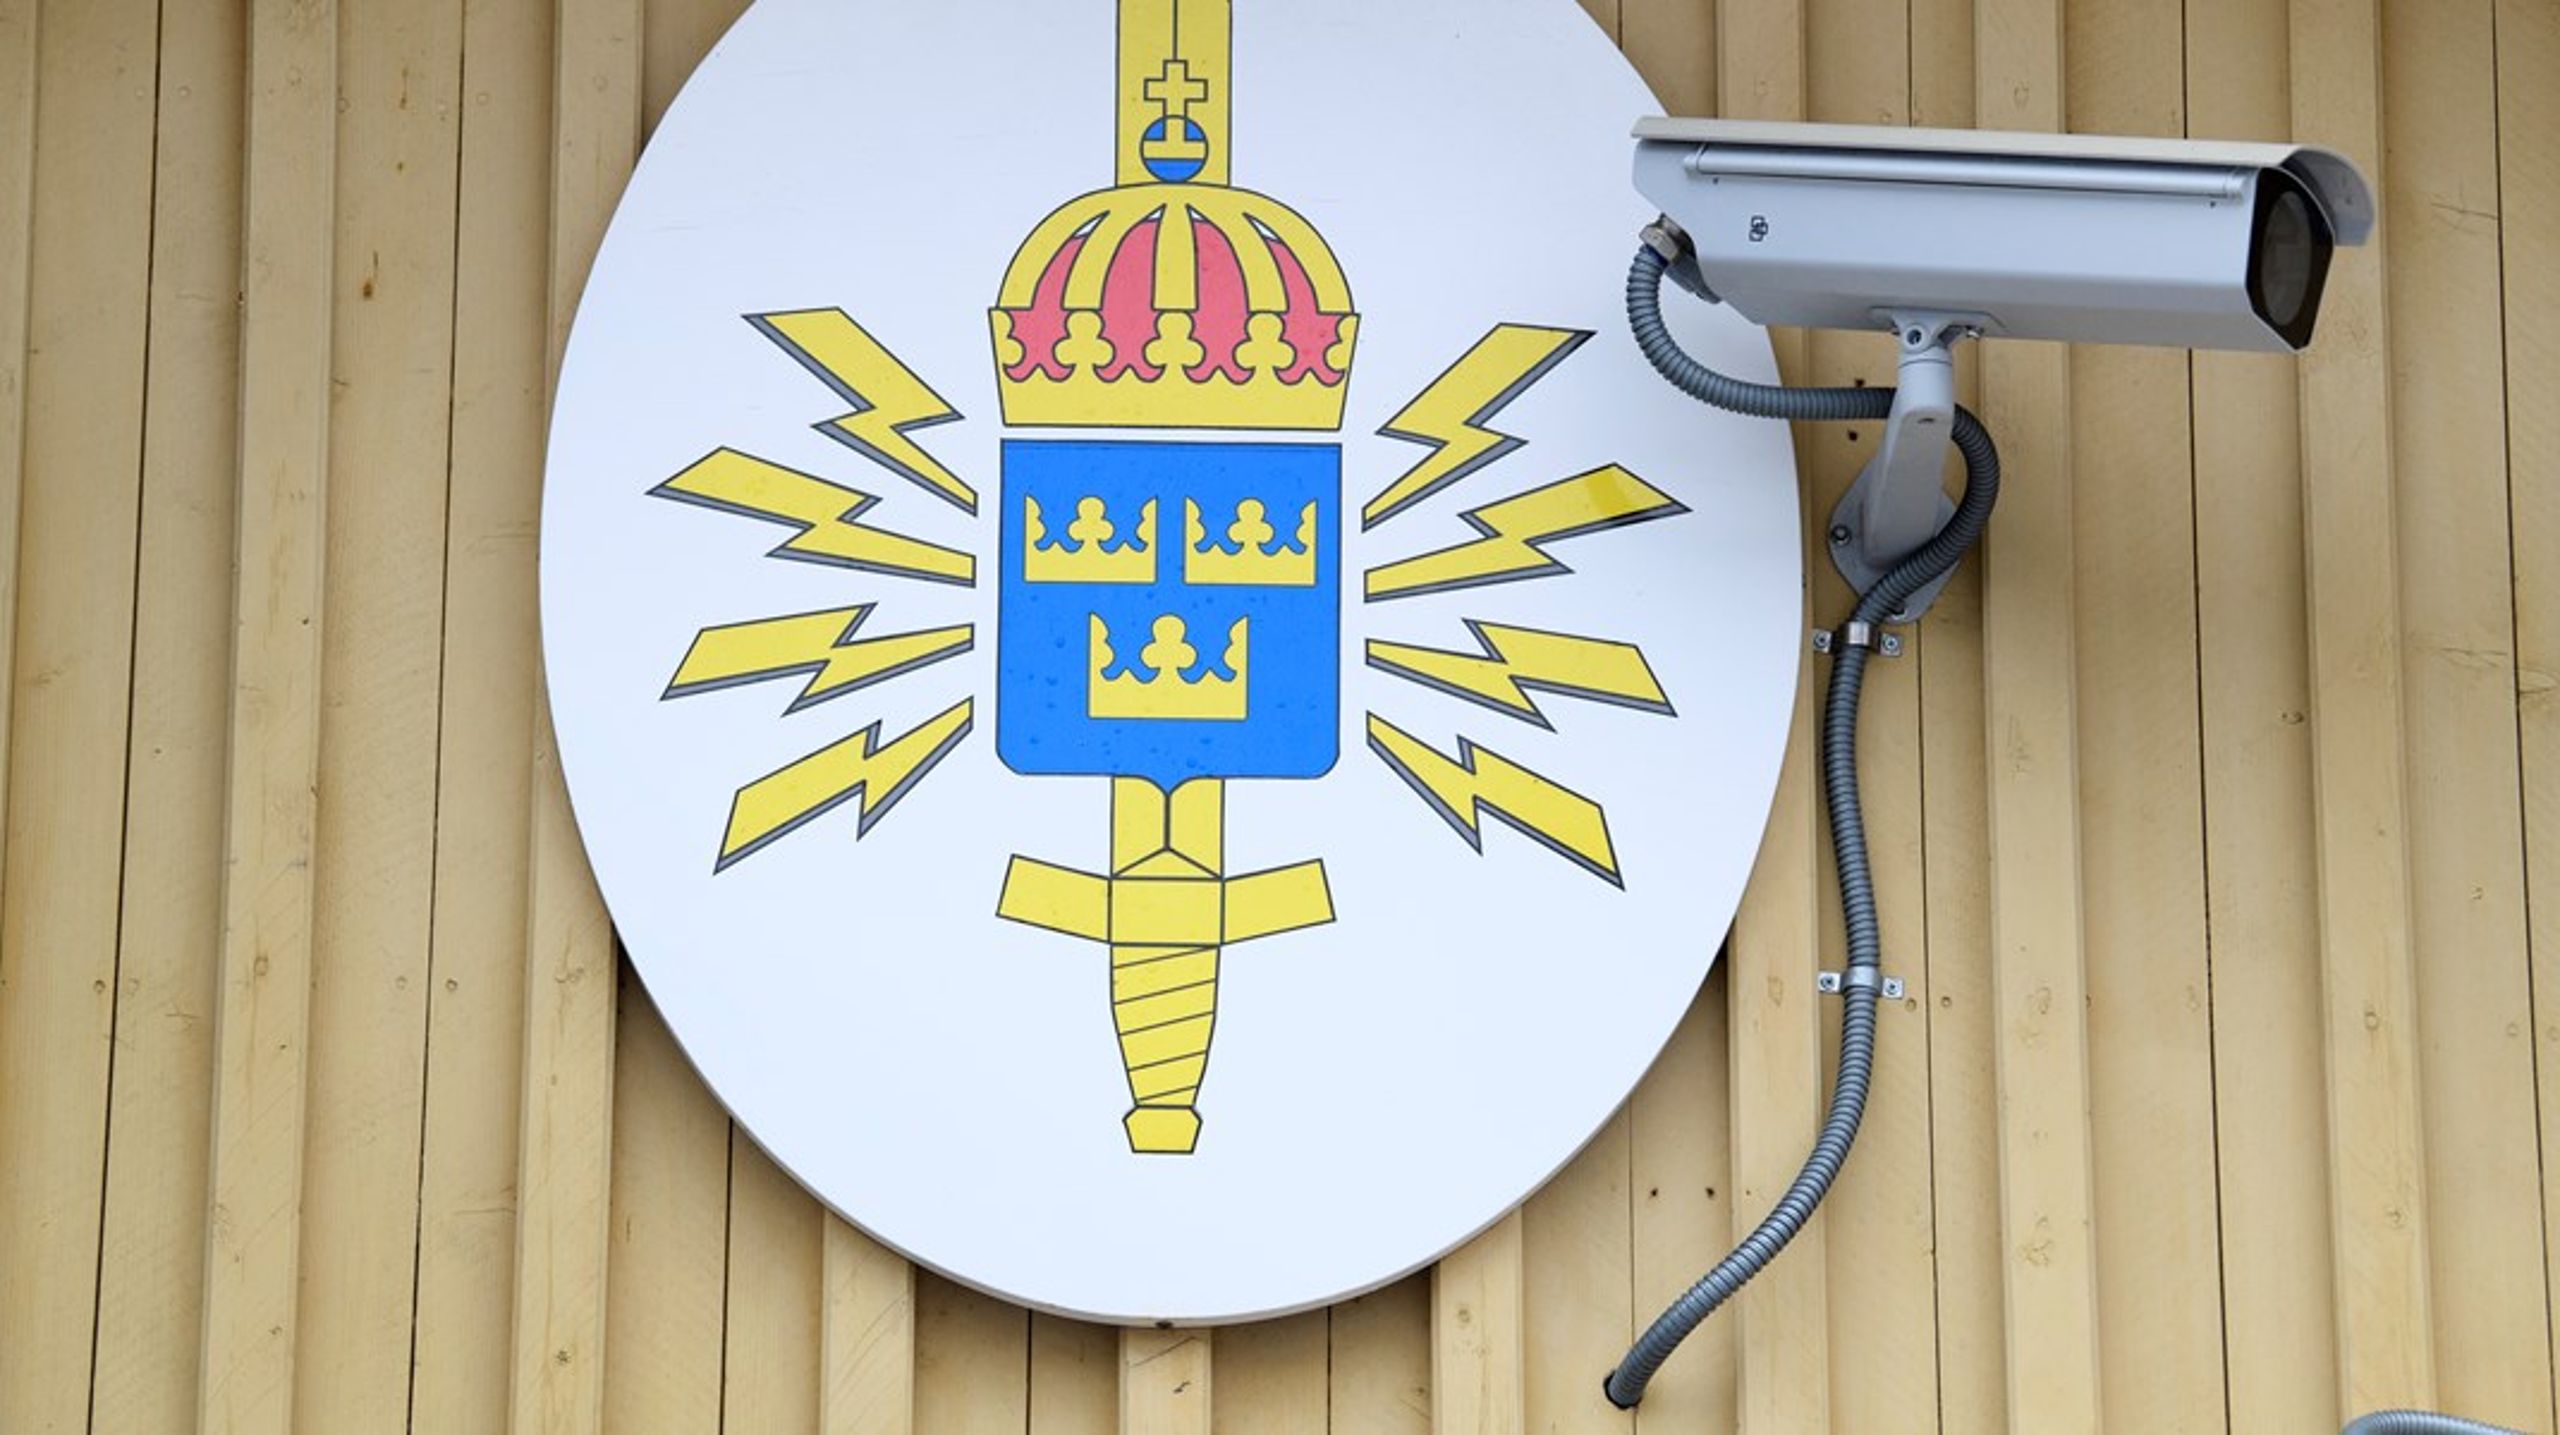 FRA ska tillåtas att signalspana även när det inte gäller hot mot Sverige, enligt ett lagförslag som riksdagen röstar om nästa vecka.